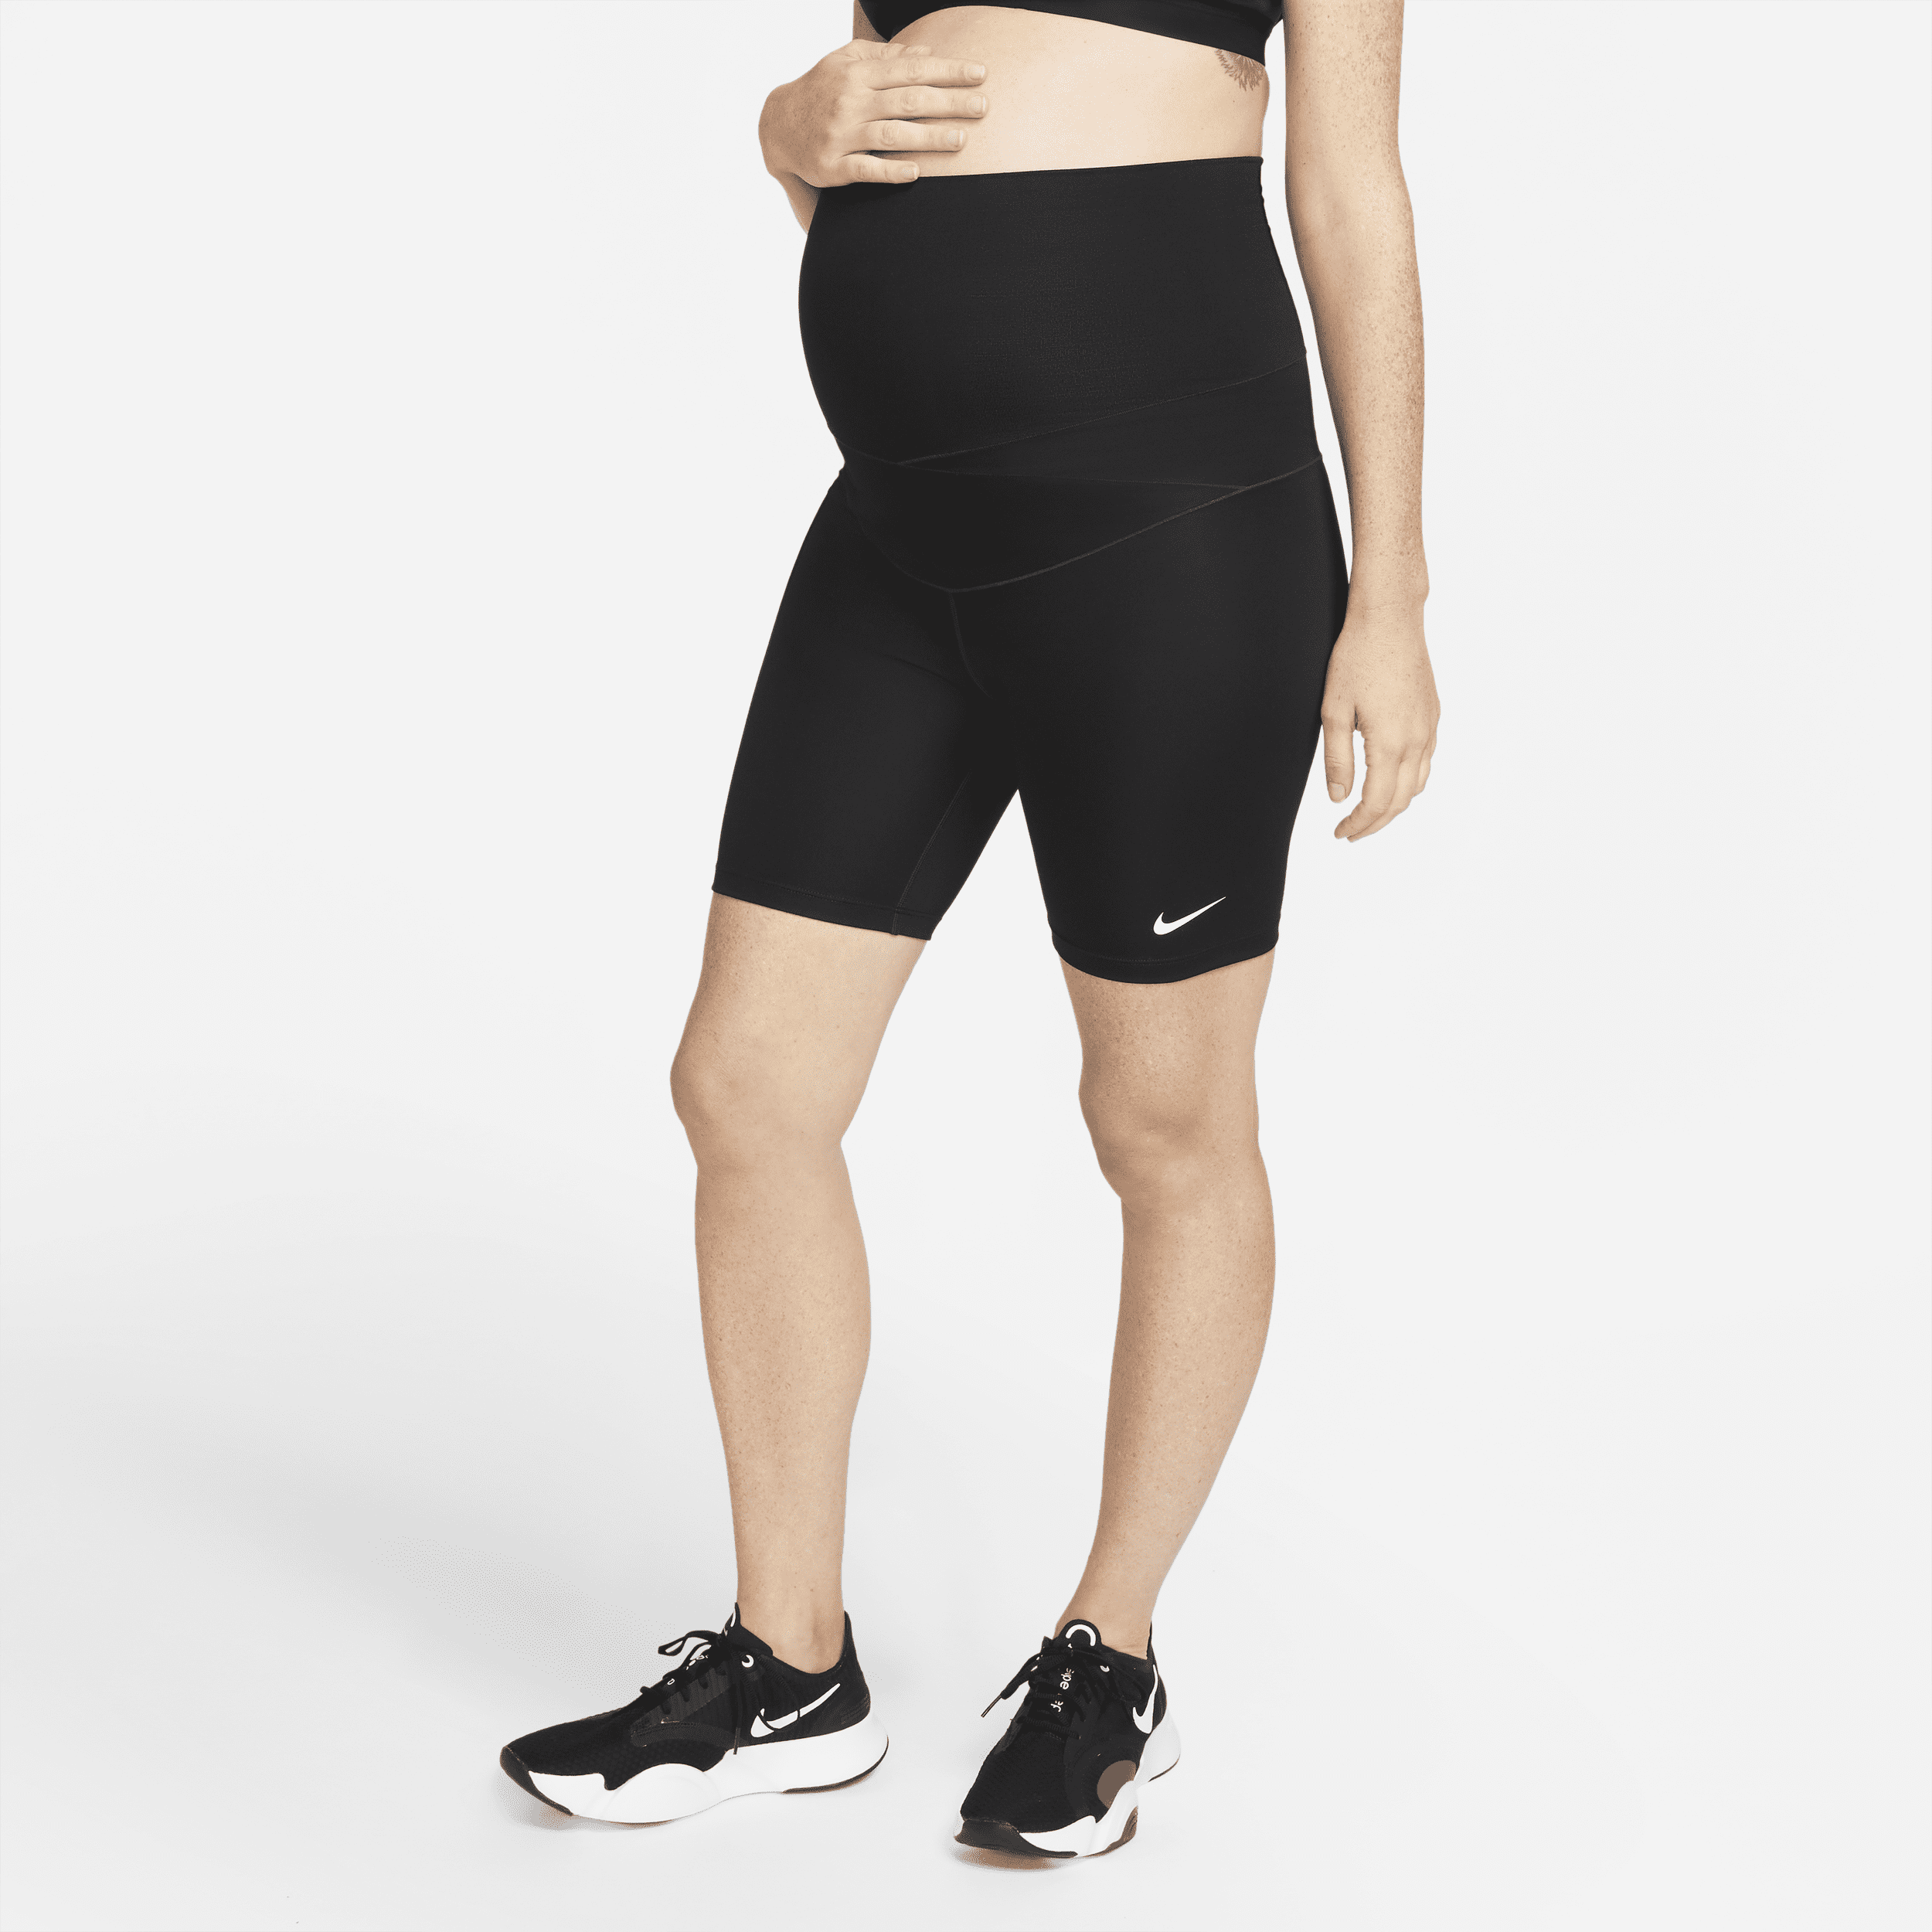 Nike One (M) Pantalón corto de ciclismo de 18 cm (Maternidad) - Mujer - Negro